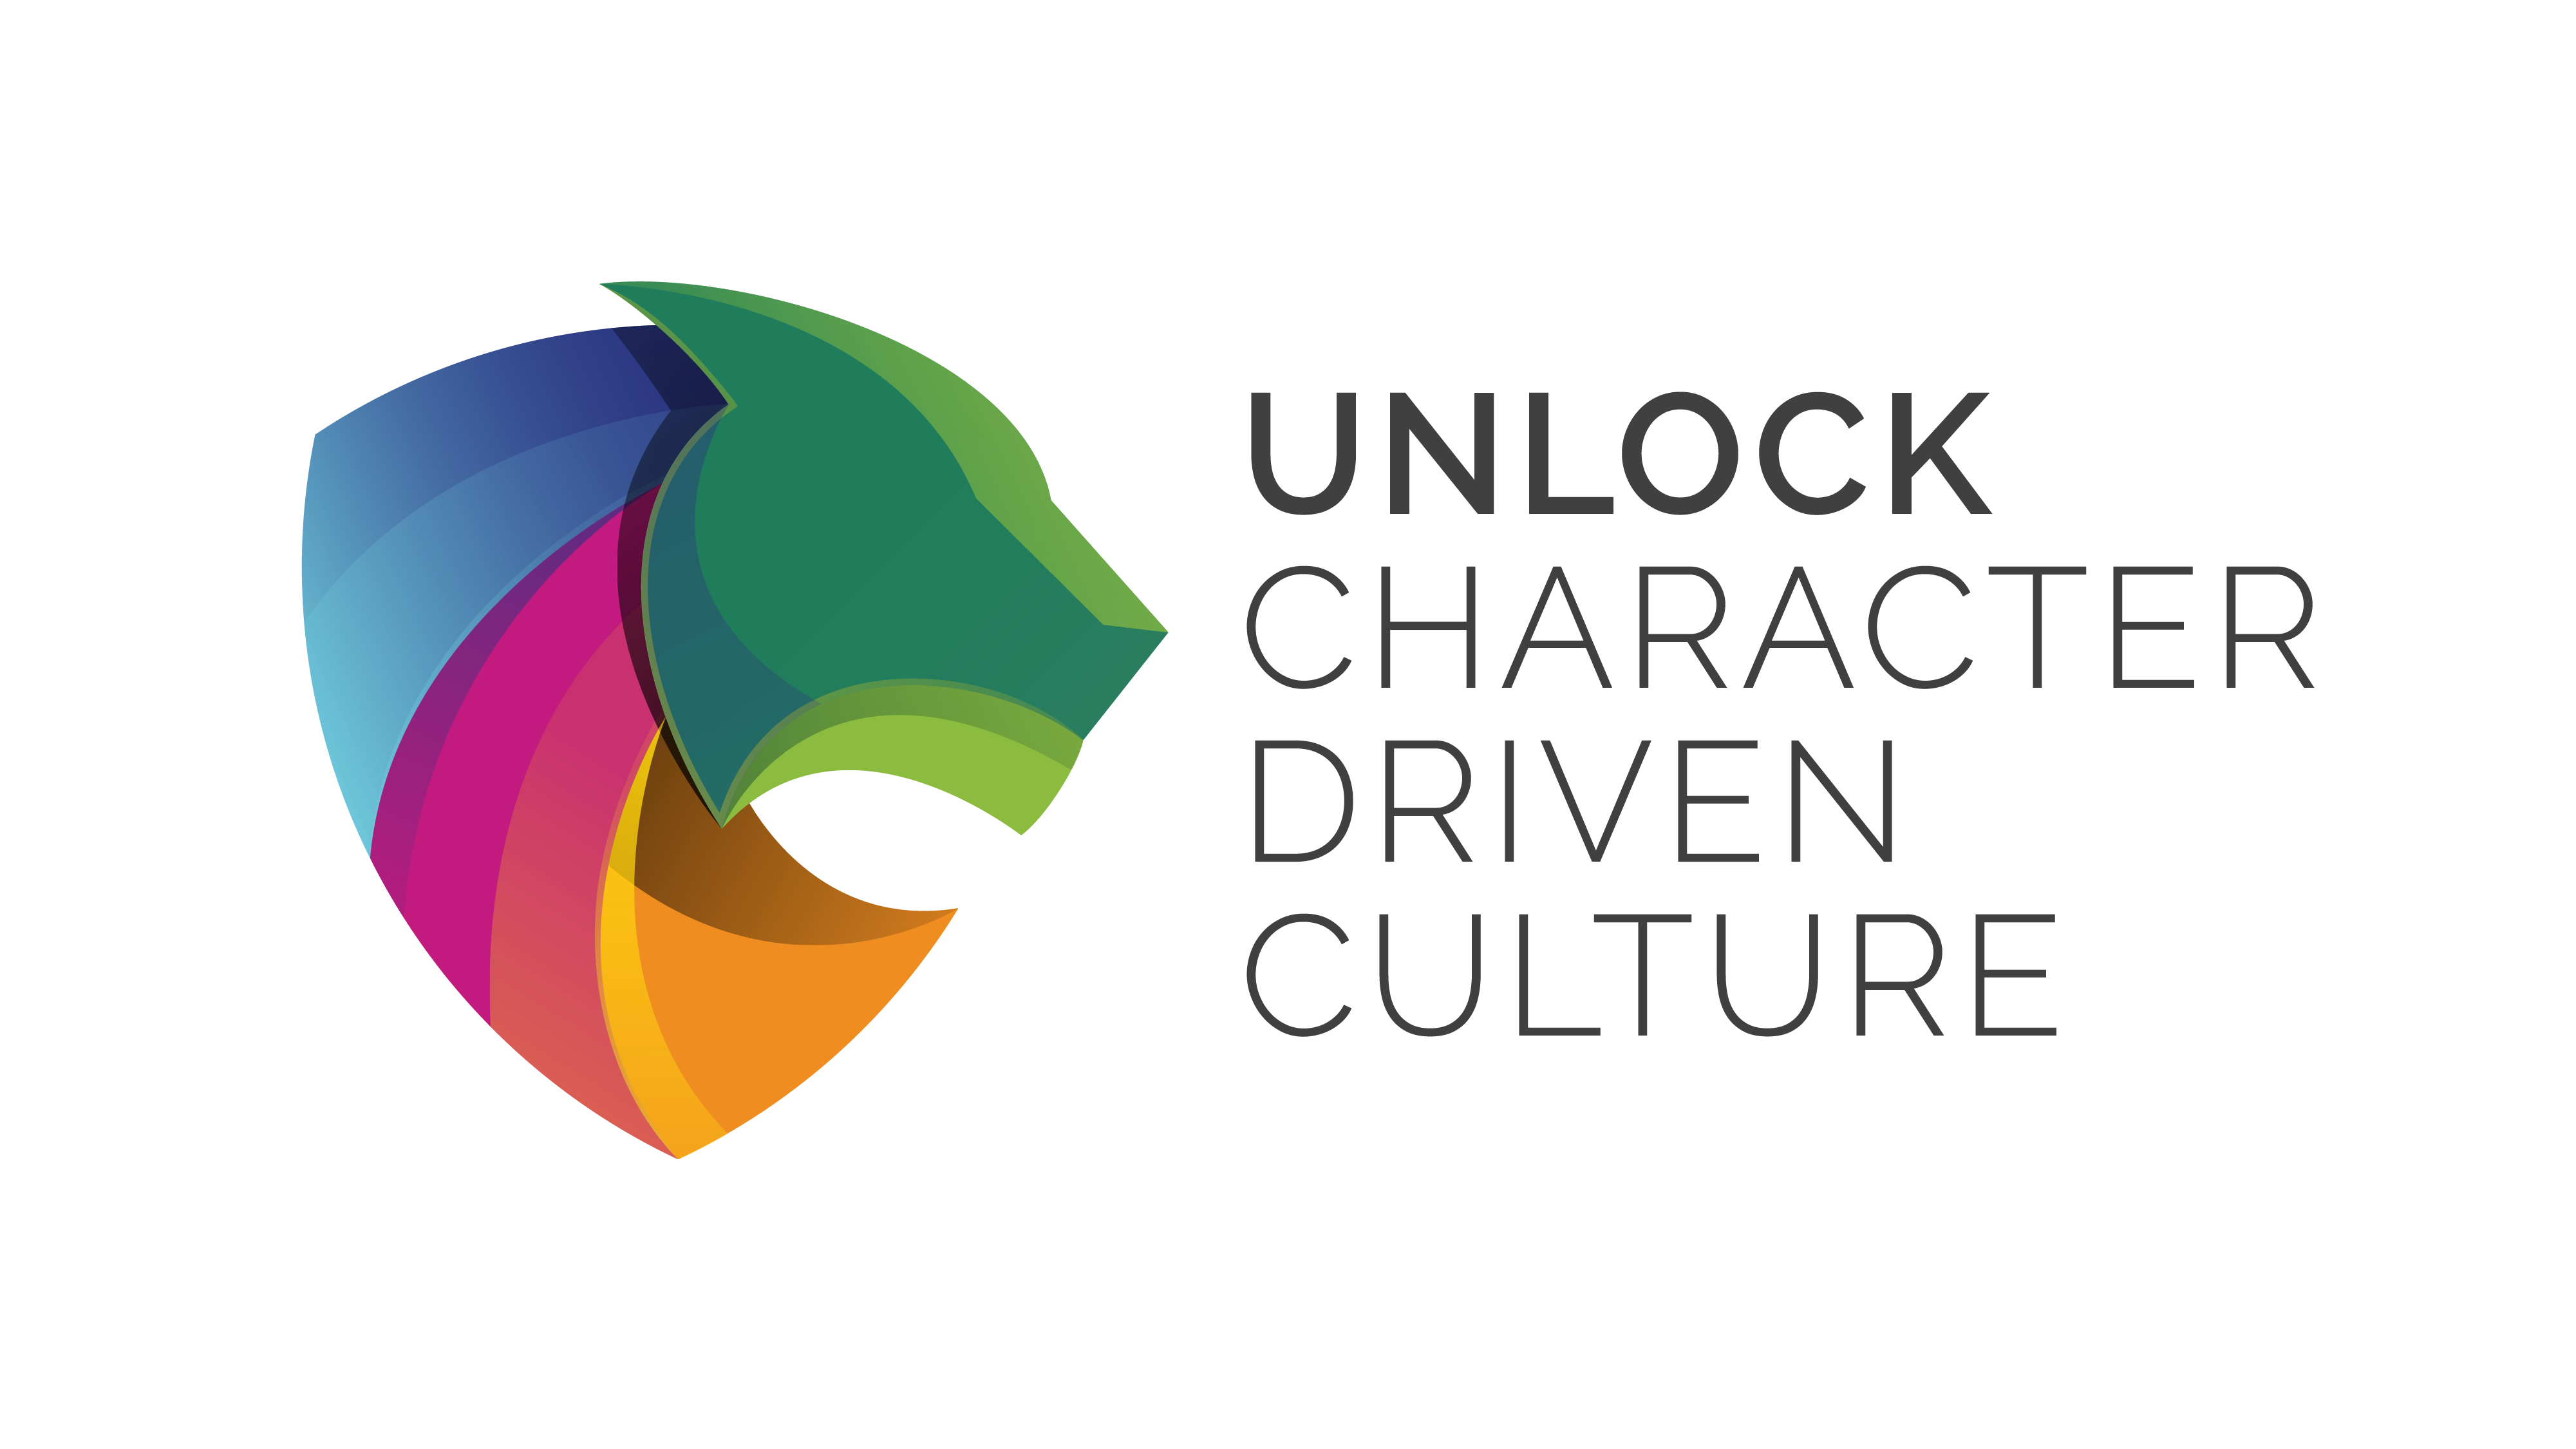 Unlock character driven culture